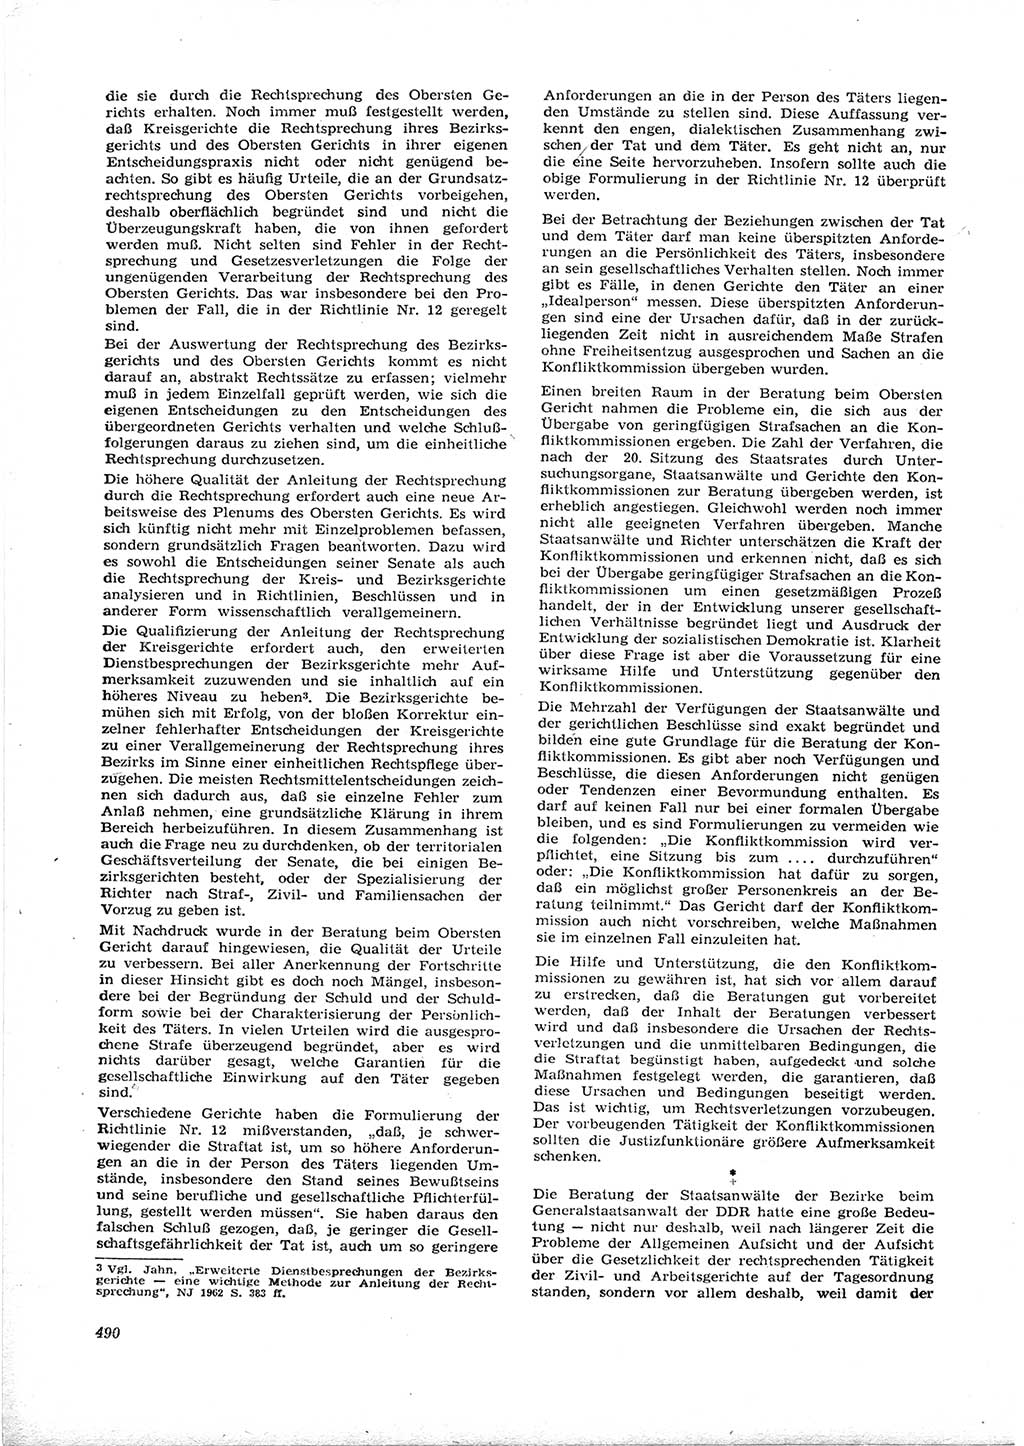 Neue Justiz (NJ), Zeitschrift für Recht und Rechtswissenschaft [Deutsche Demokratische Republik (DDR)], 16. Jahrgang 1962, Seite 490 (NJ DDR 1962, S. 490)